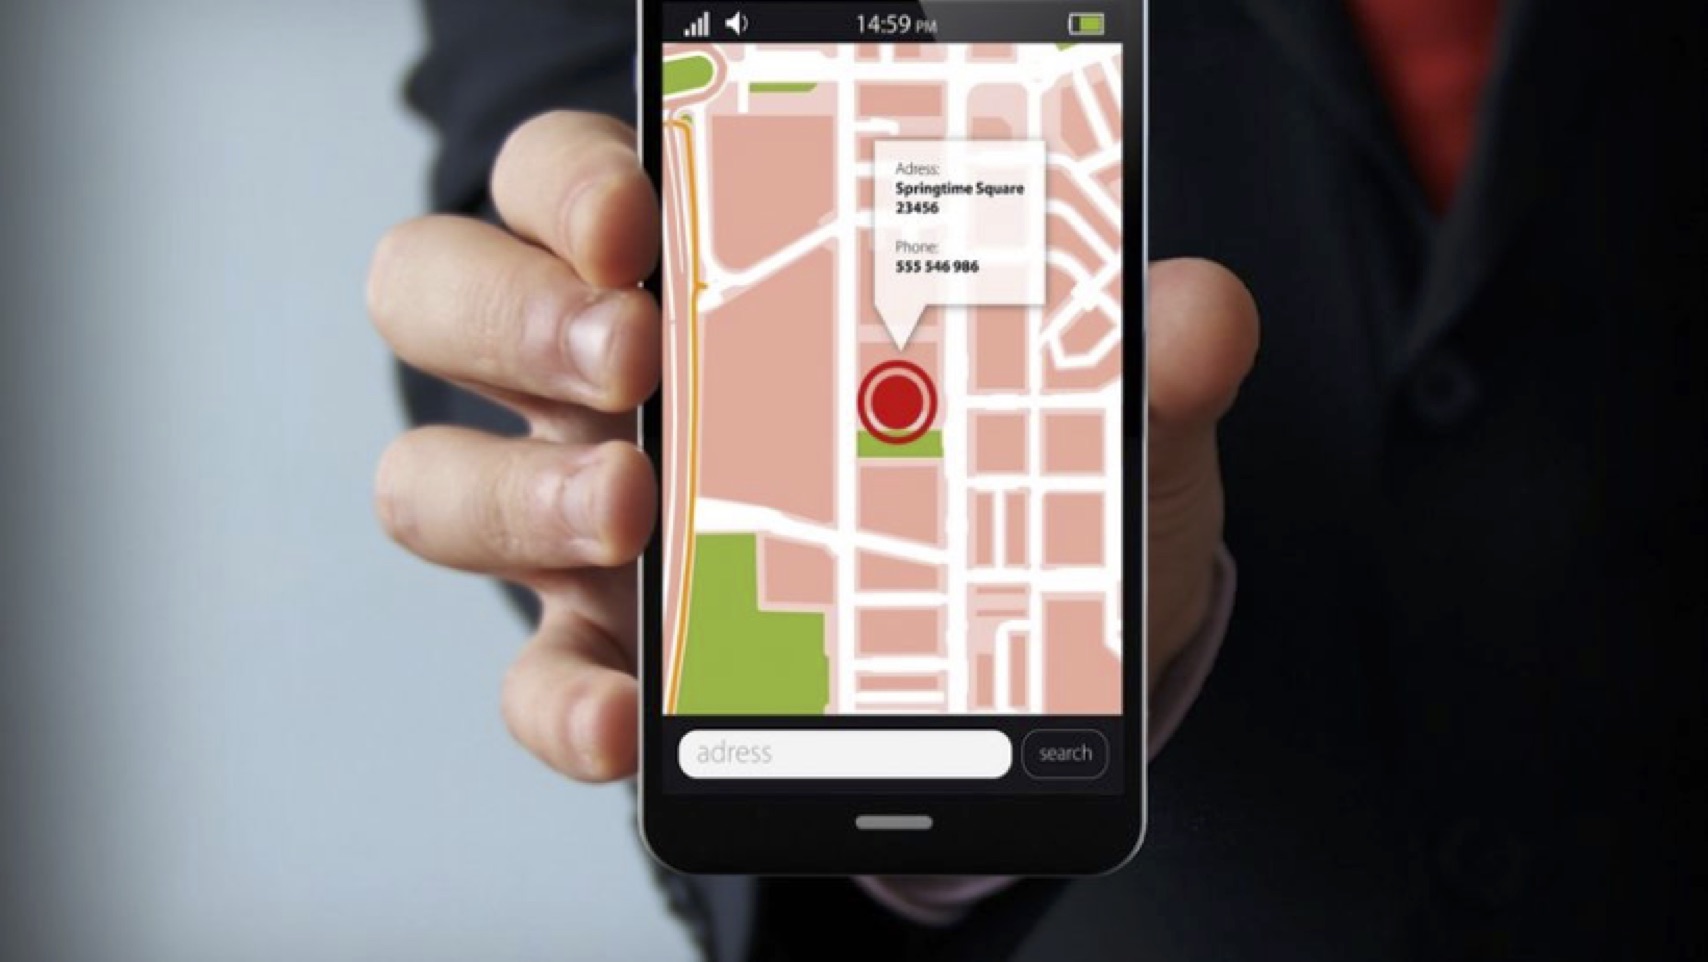 كيف يتم تتبع موقعك الجغرافي عبر الهاتف حتى بعد تعطيل الـ GPS : نصائح لتجاوز التجسس على مكانك الحالي